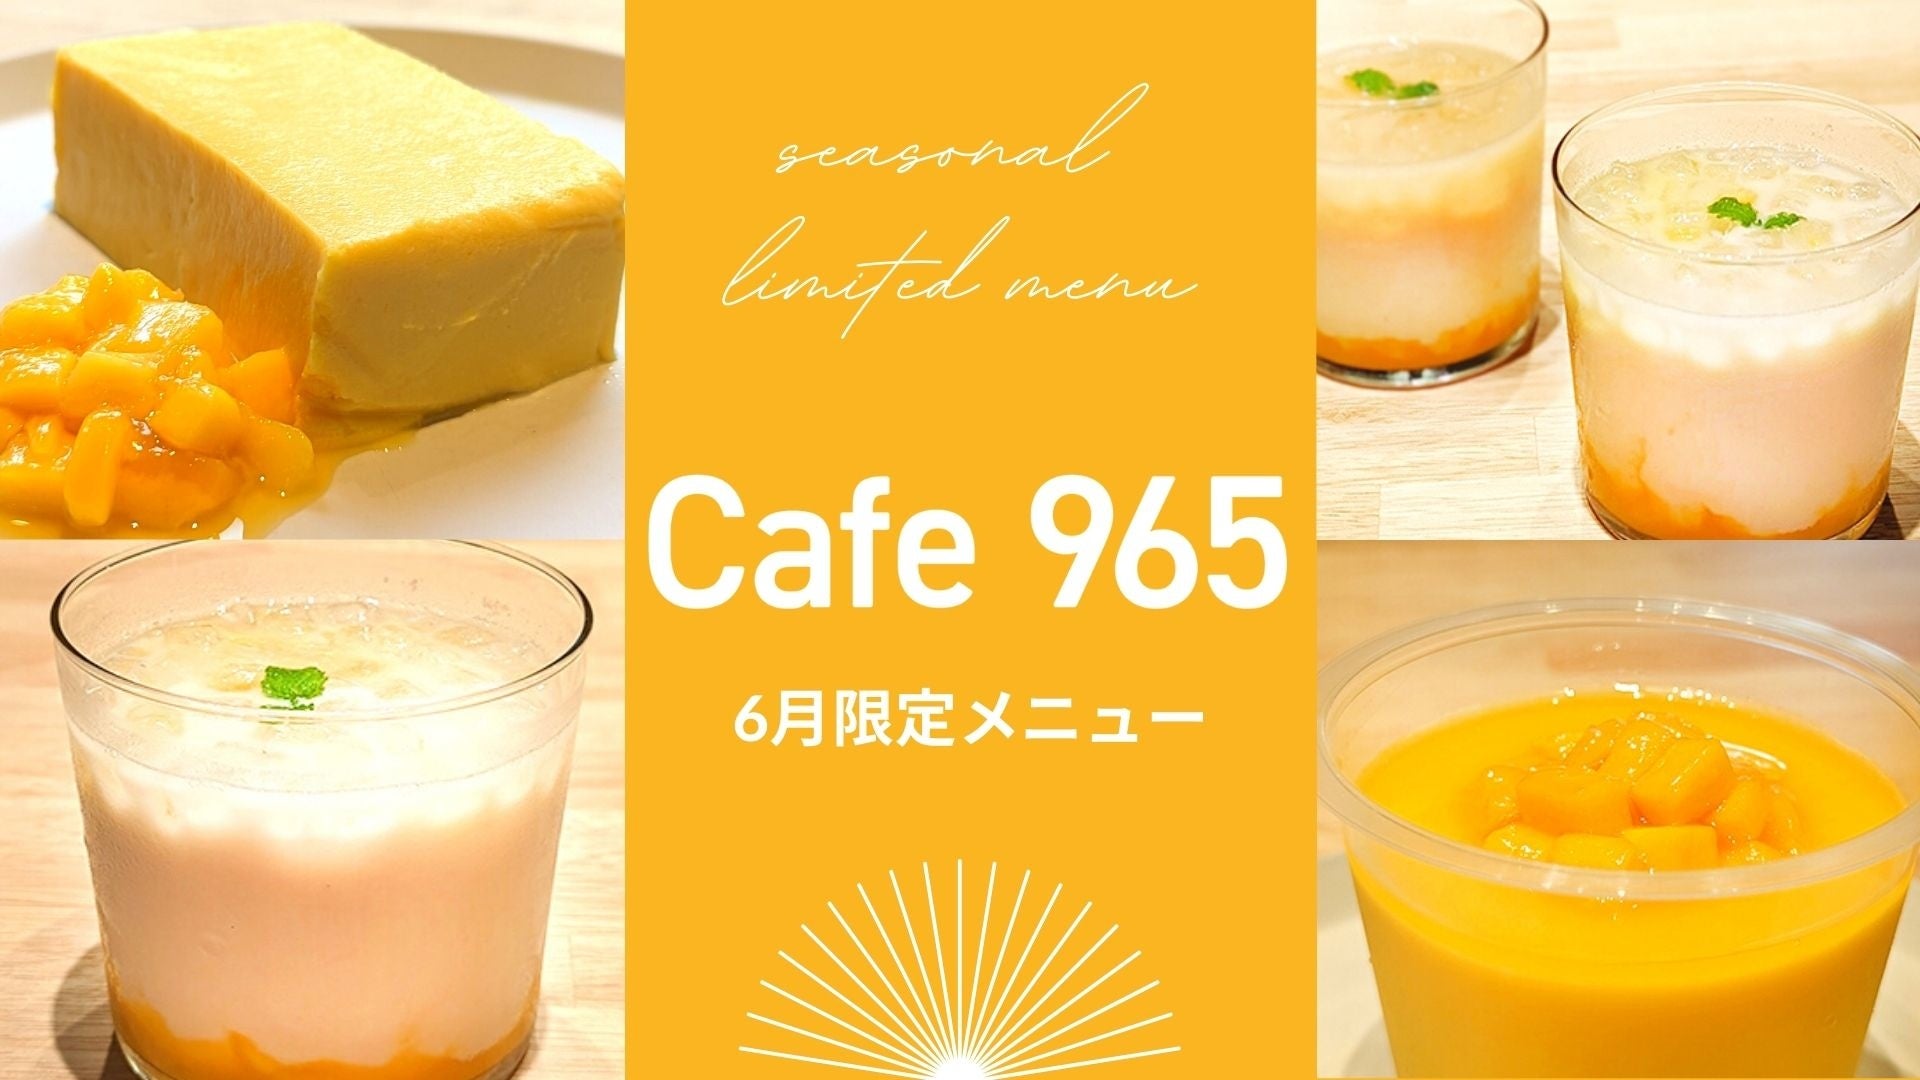 【Cafe965】6月限定・梅雨時に爽やかなスイーツ・マンゴーをたっぷり使用したチーズテリーヌを含む4品が登場のサブ画像1